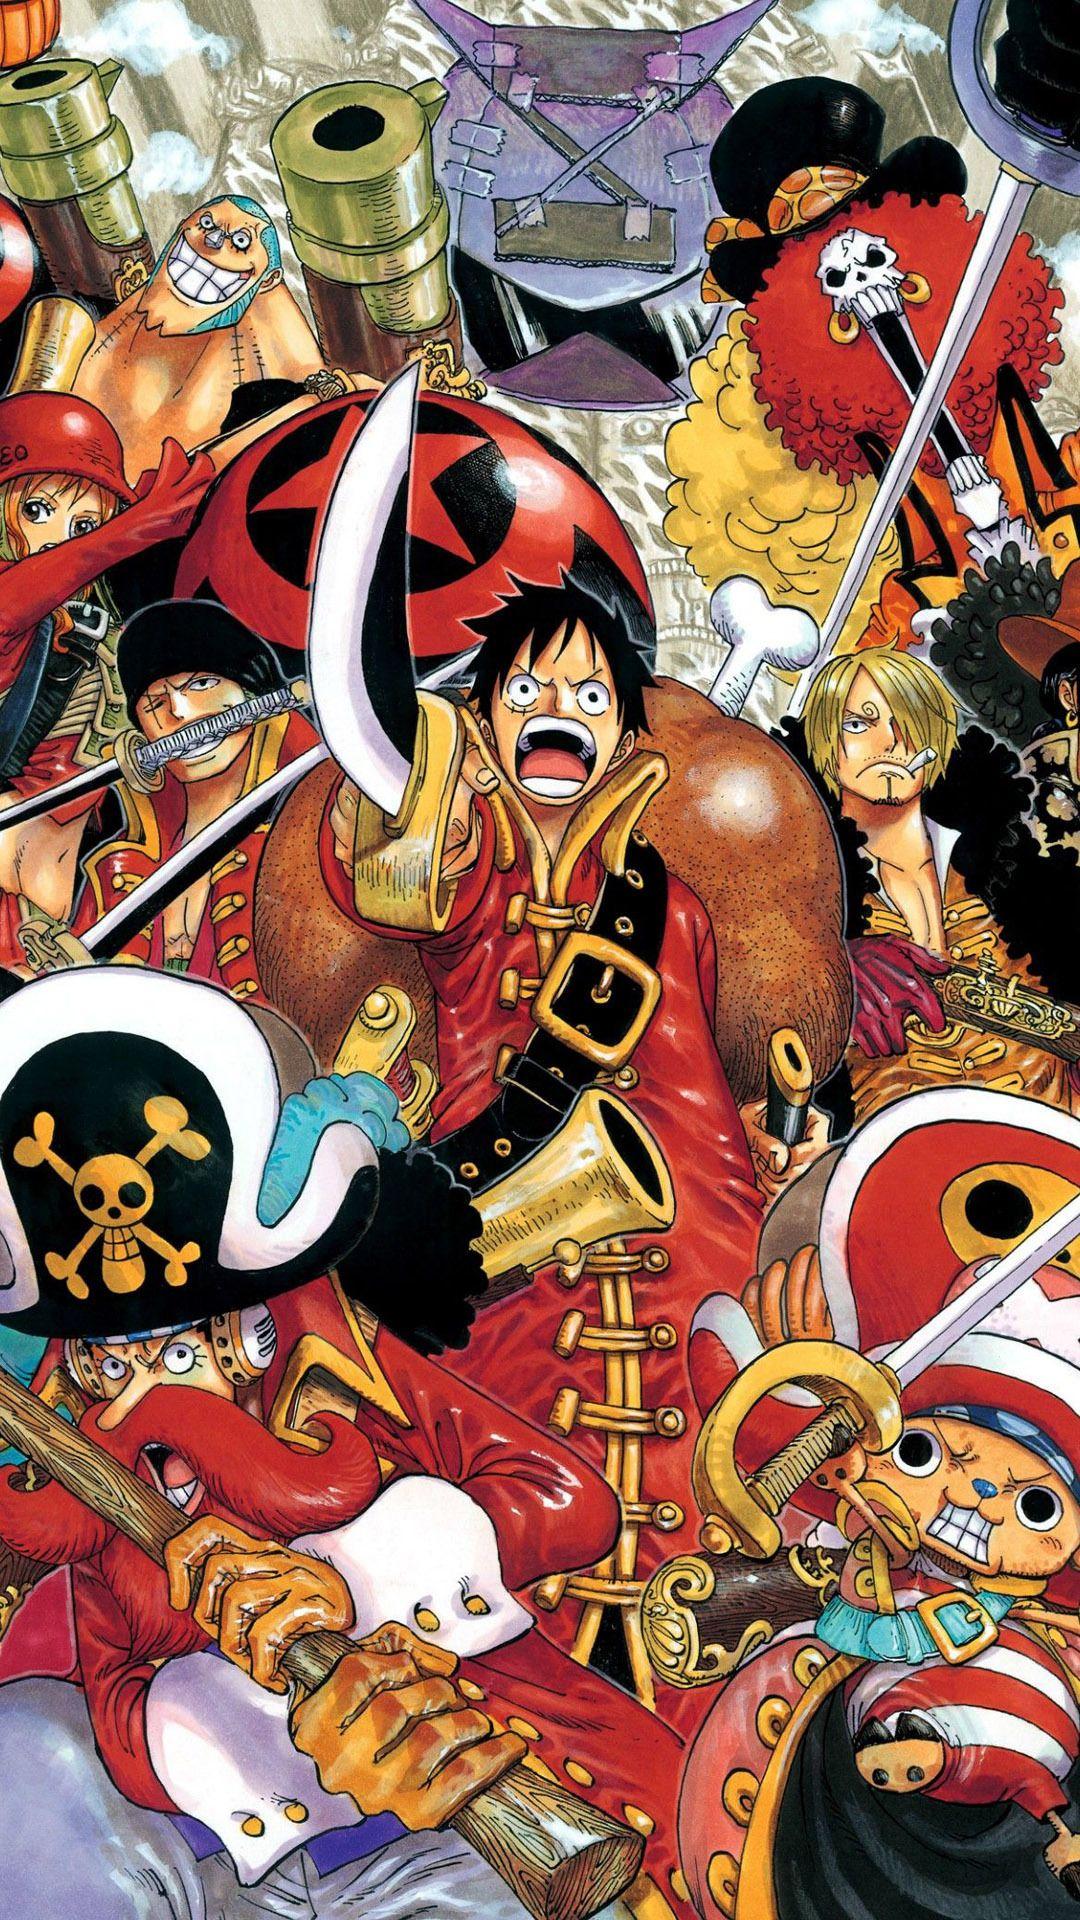 Download 25 Download Wallpaper One Piece Untuk Hp Android terbaru 2019